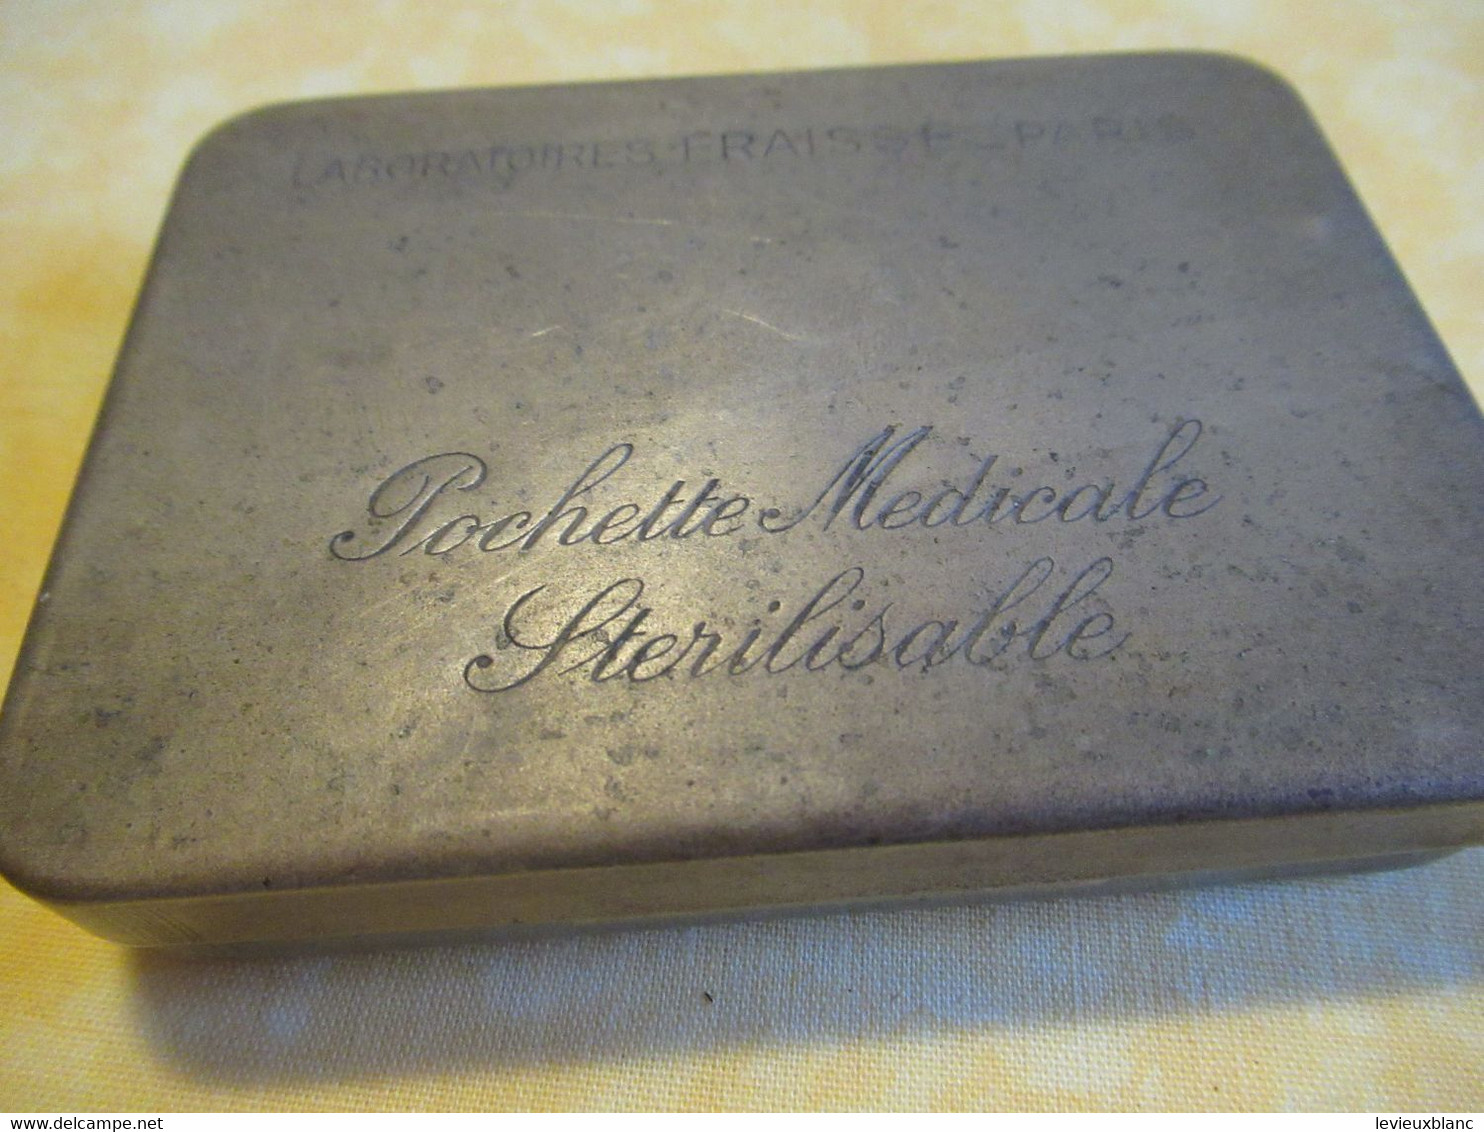 Boite Métallique Ancienne/Pochette Médicale Stérilisable/ LABORATOIRES FRAYSSE-PARIS// Vers 1920-1950         BFPP234 - Cajas